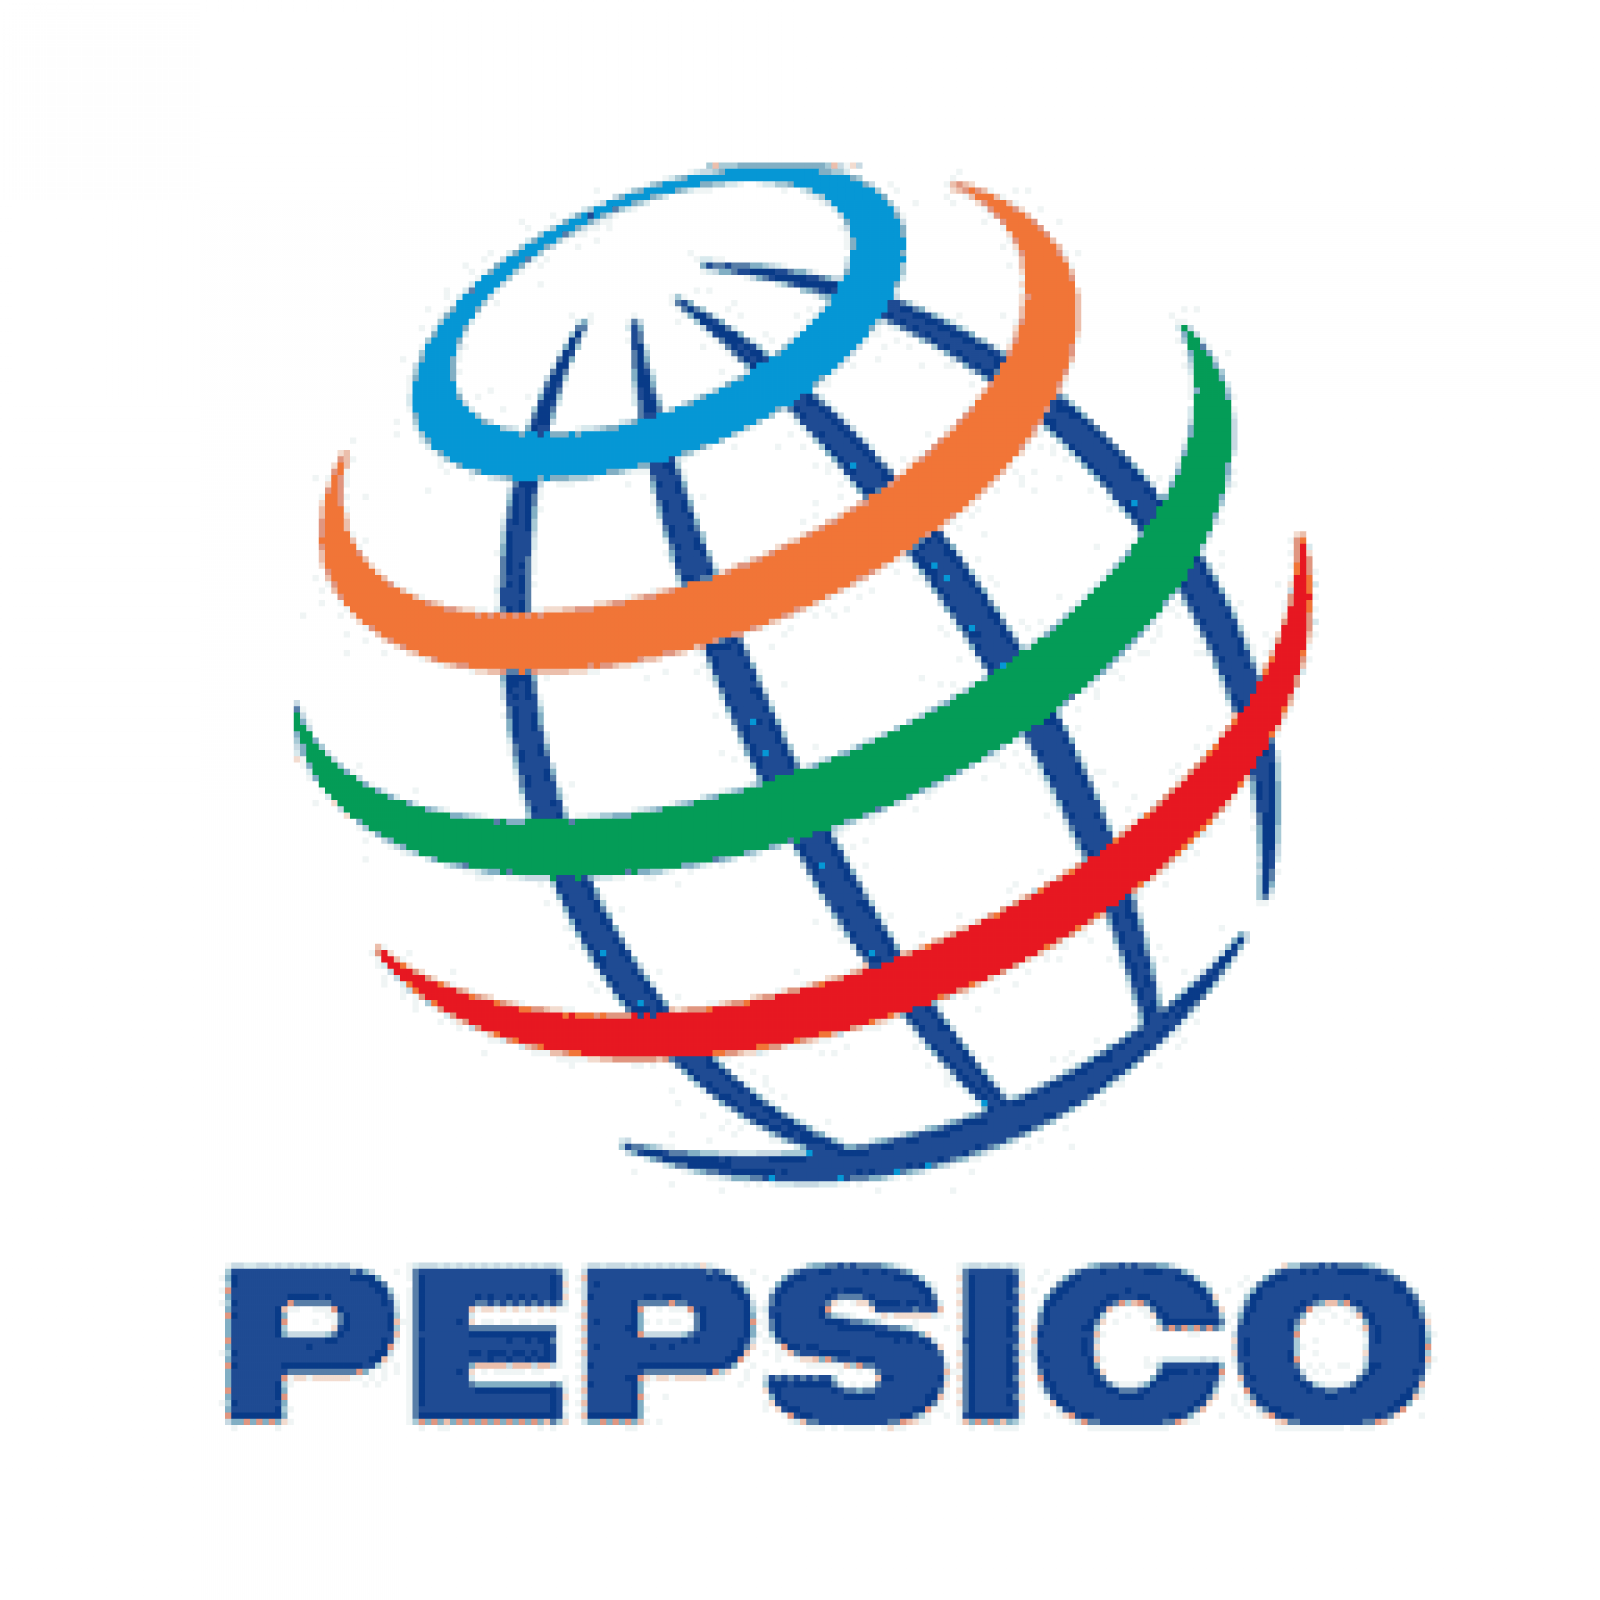 Pepsico Logos/wallpapers Wallpaper Cave